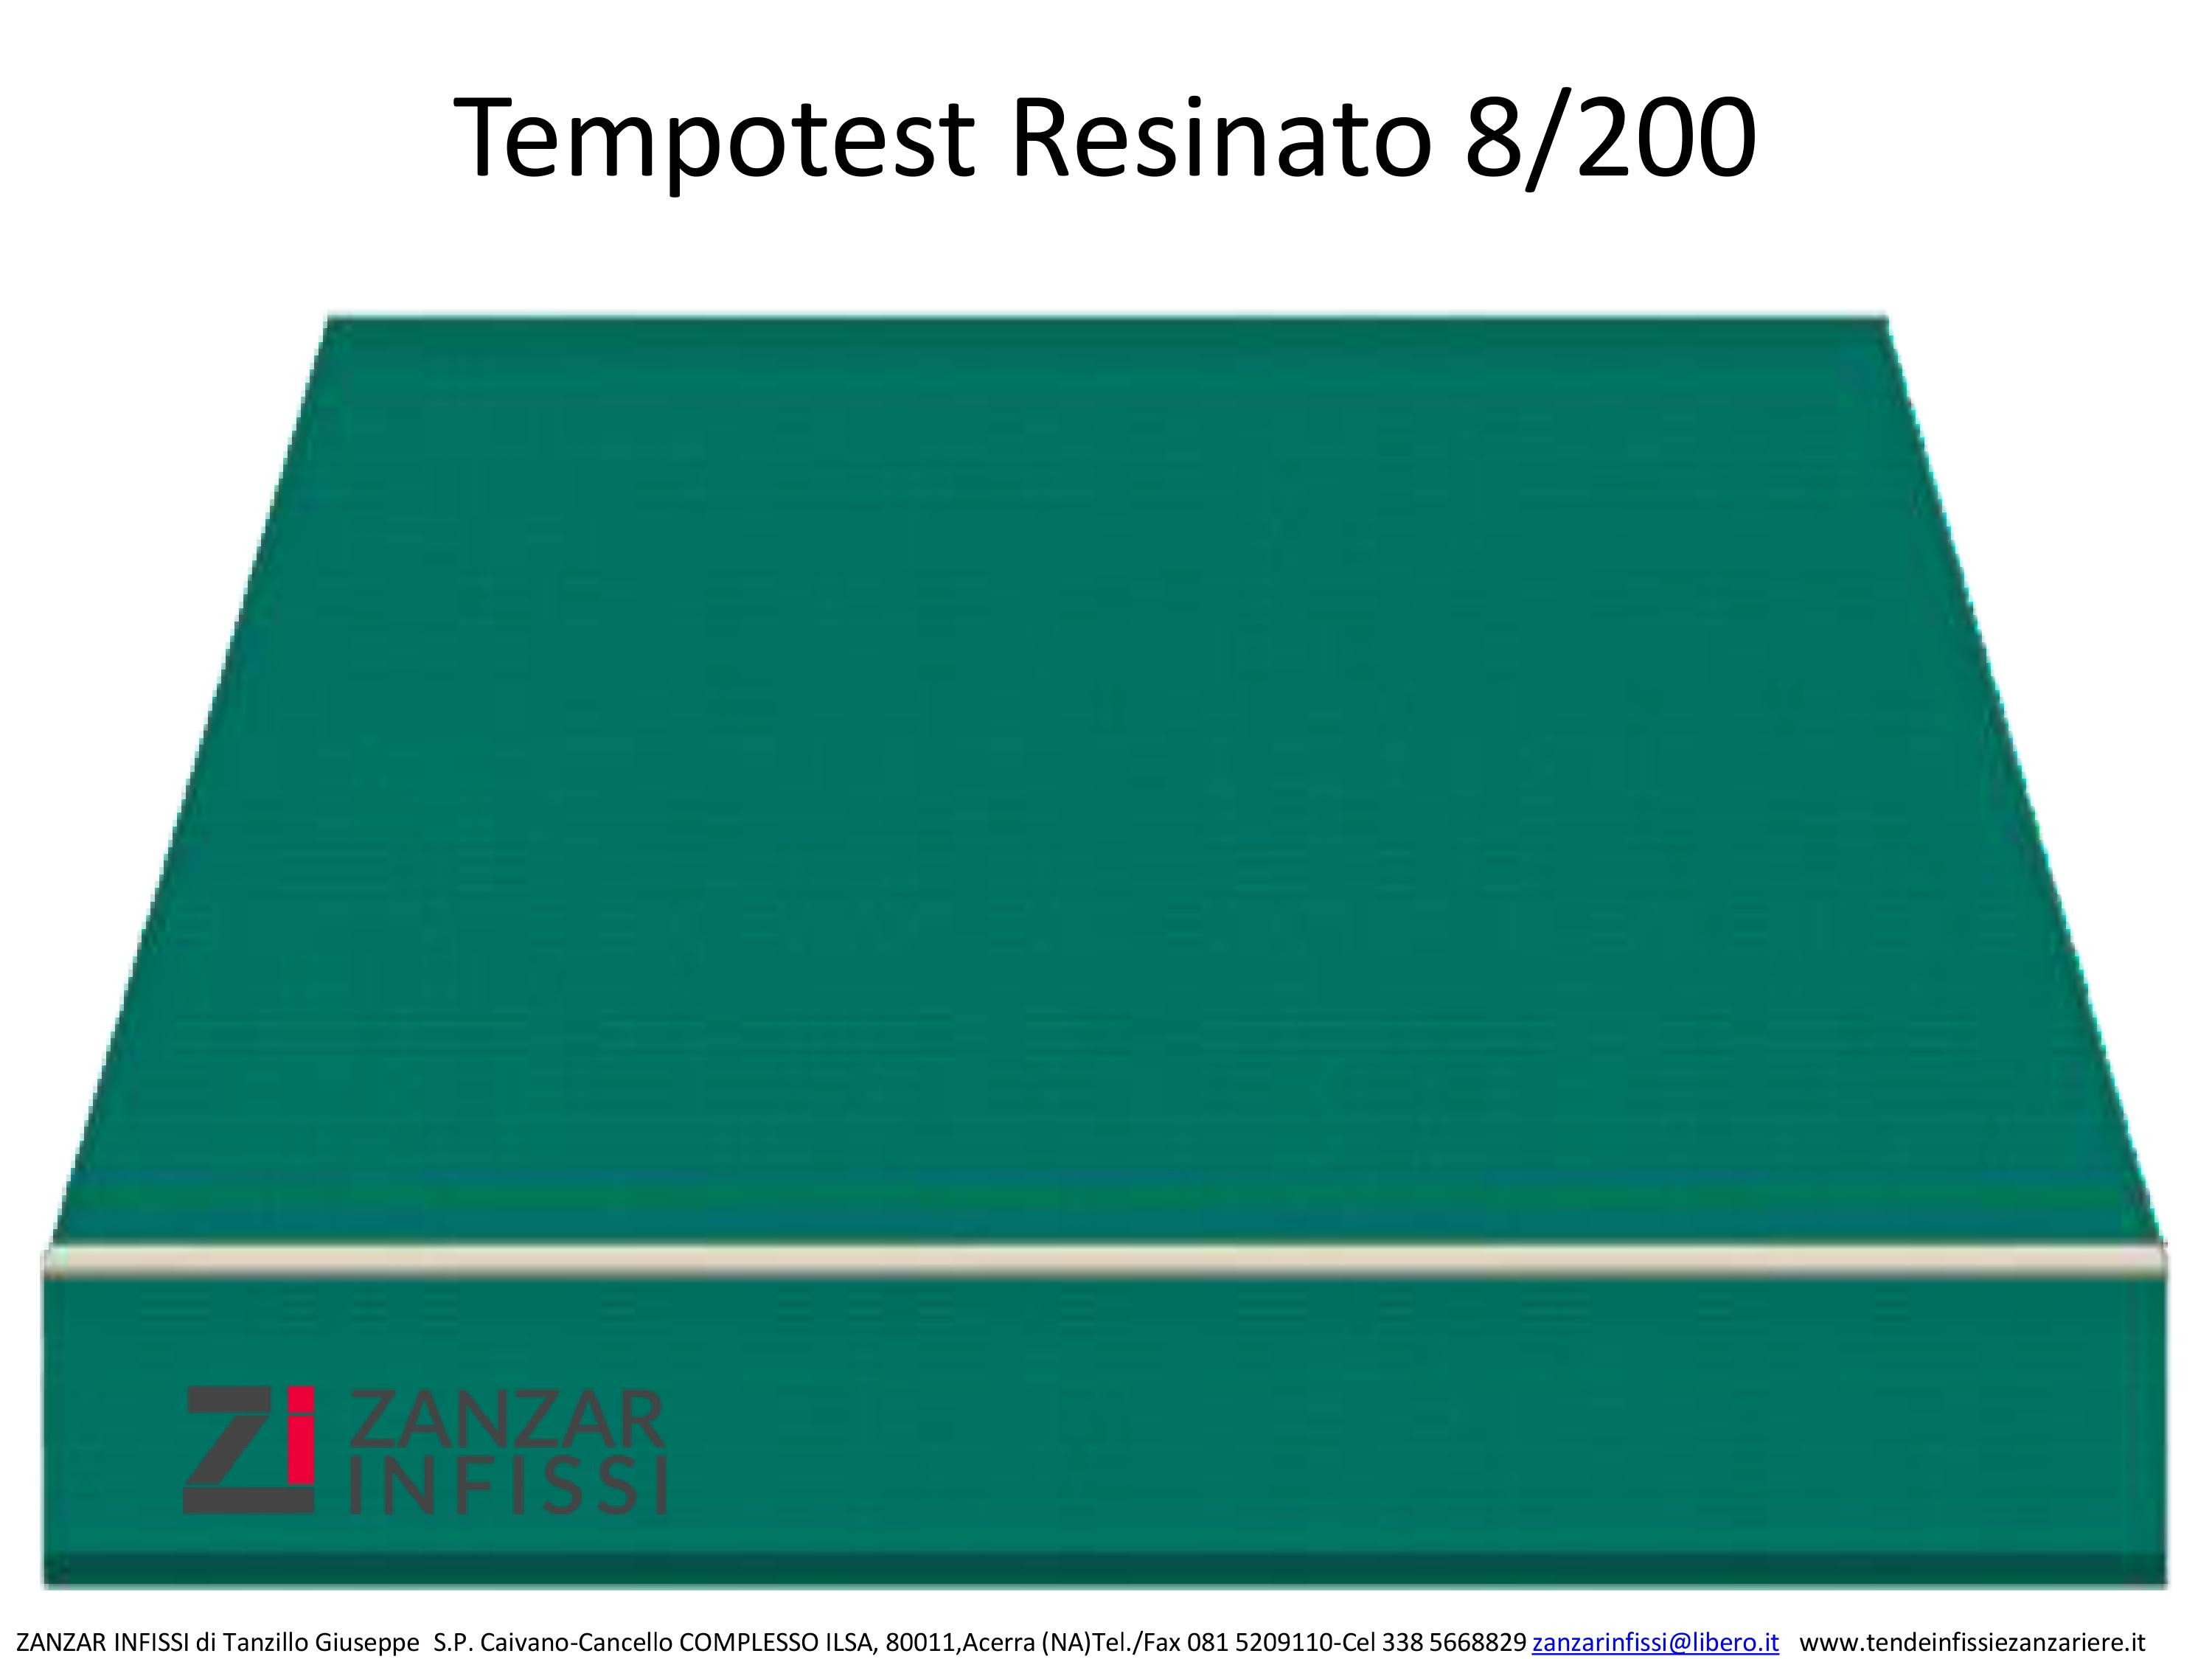 Tempotest resinato 8/200